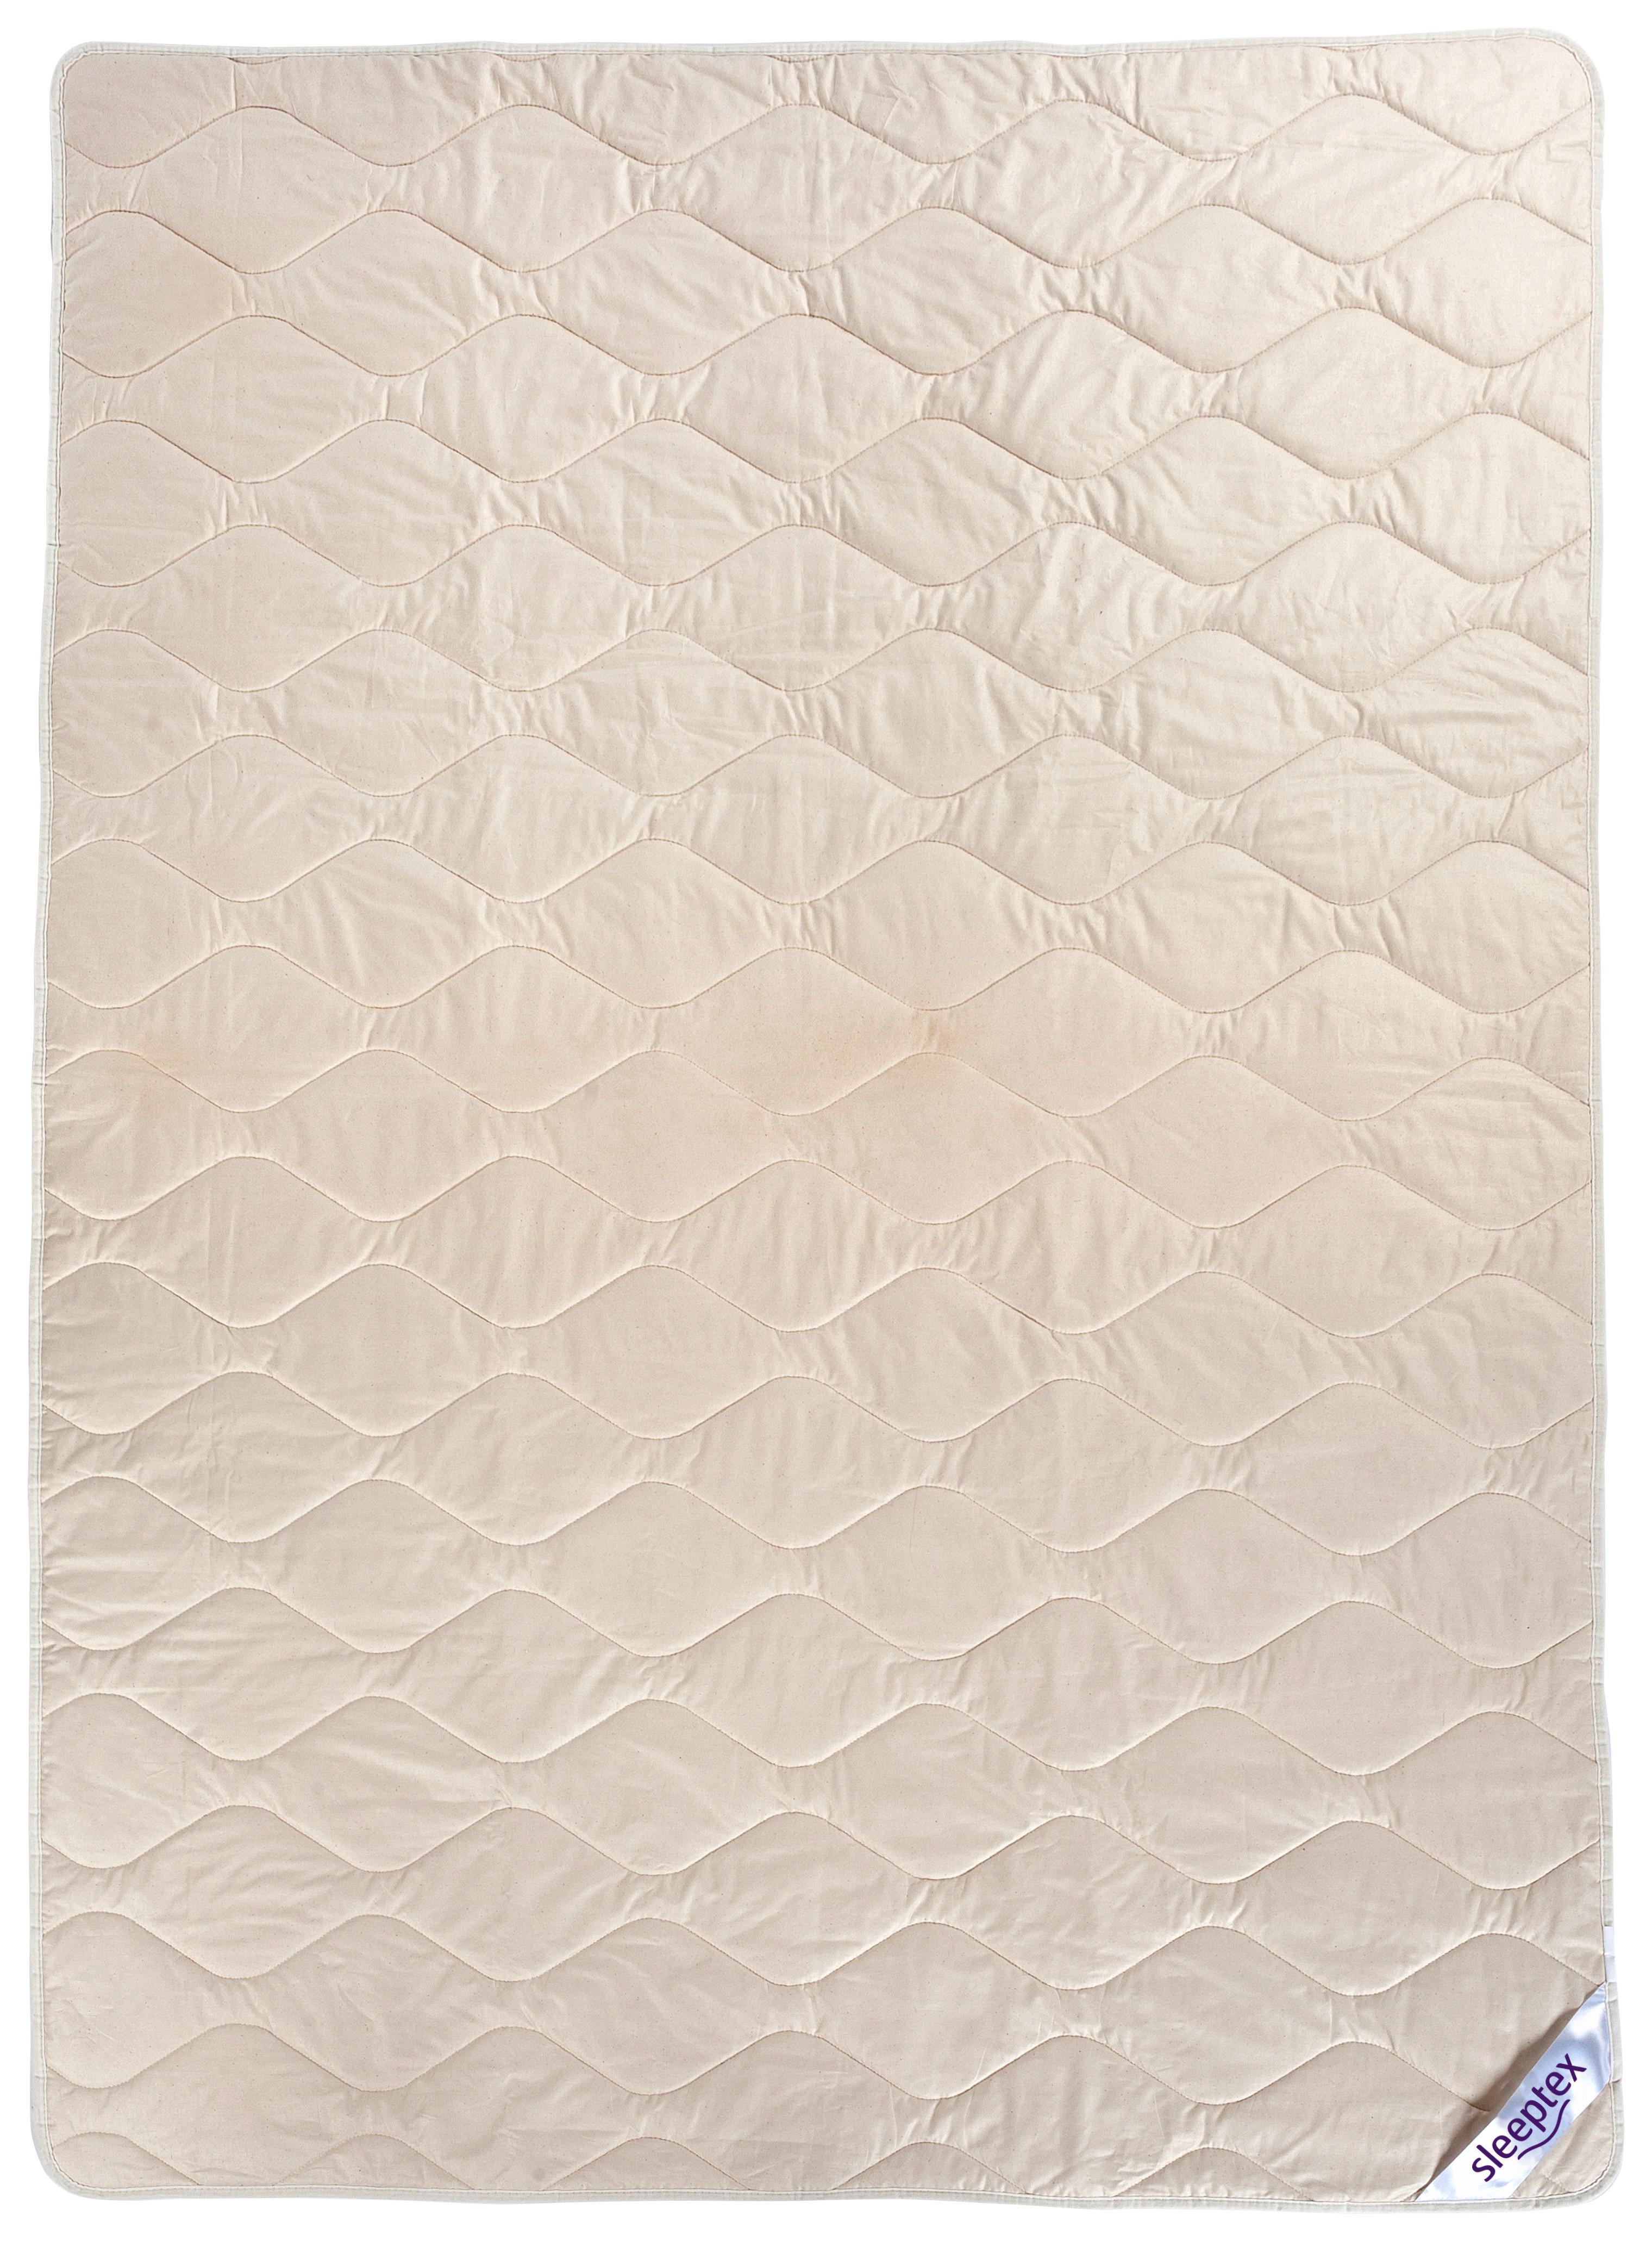 POPLUN LJETNI 140/200 cm  - bijela, Konvencionalno, tekstil (140/200cm) - Sleeptex